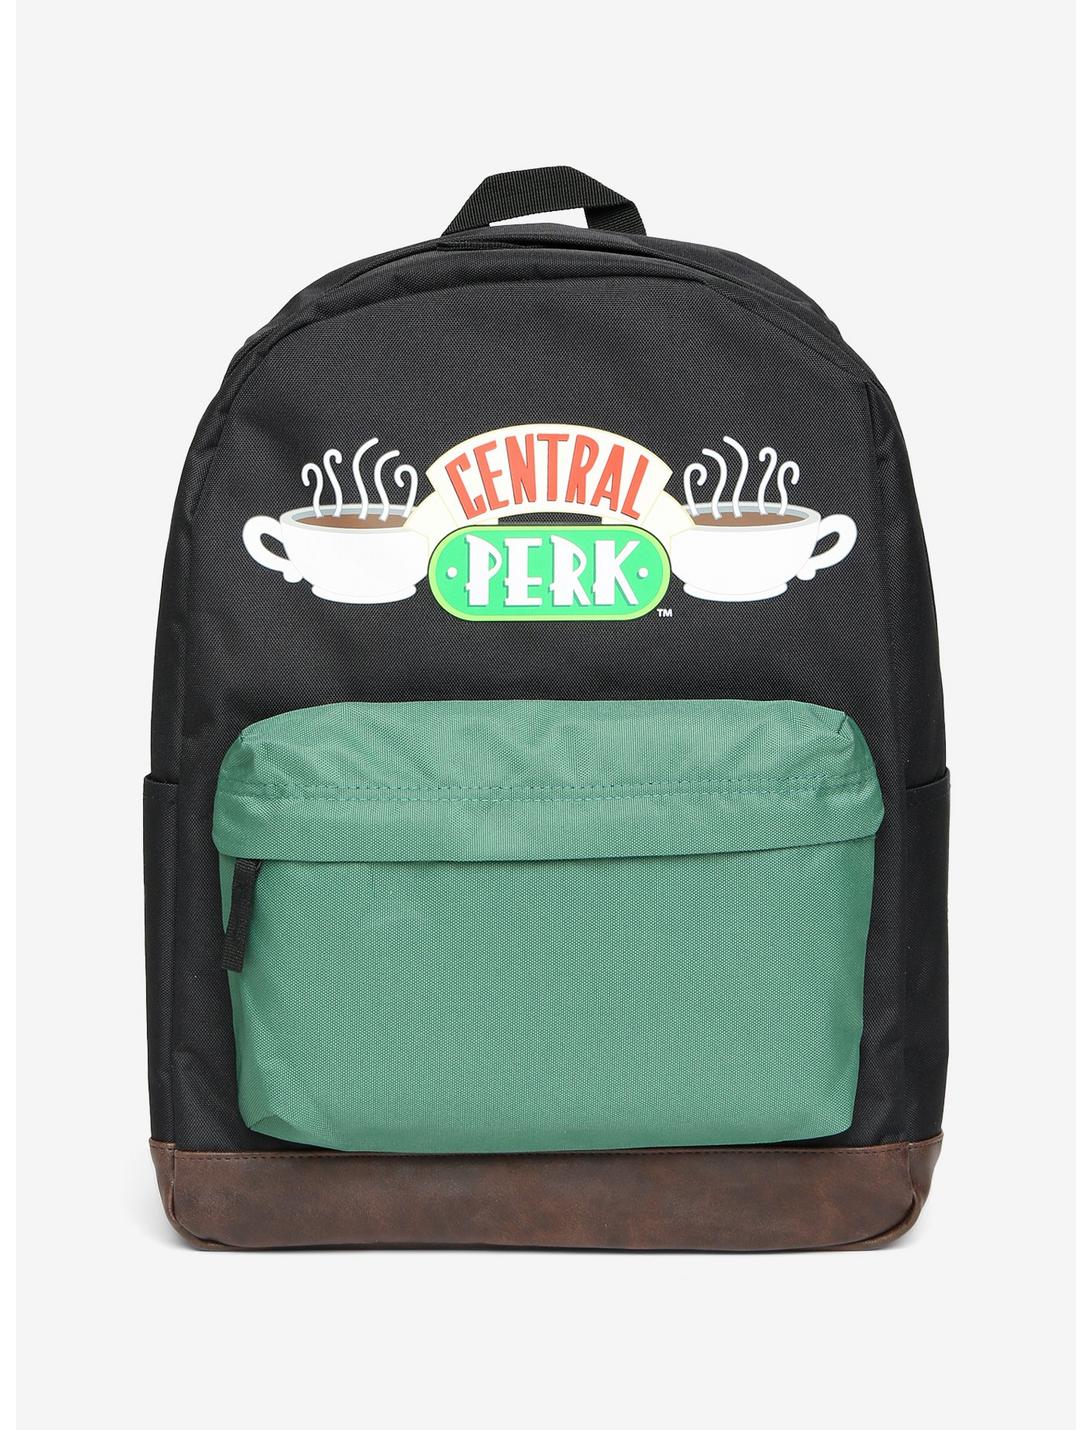 Friends Central Perk Backpack, , hi-res